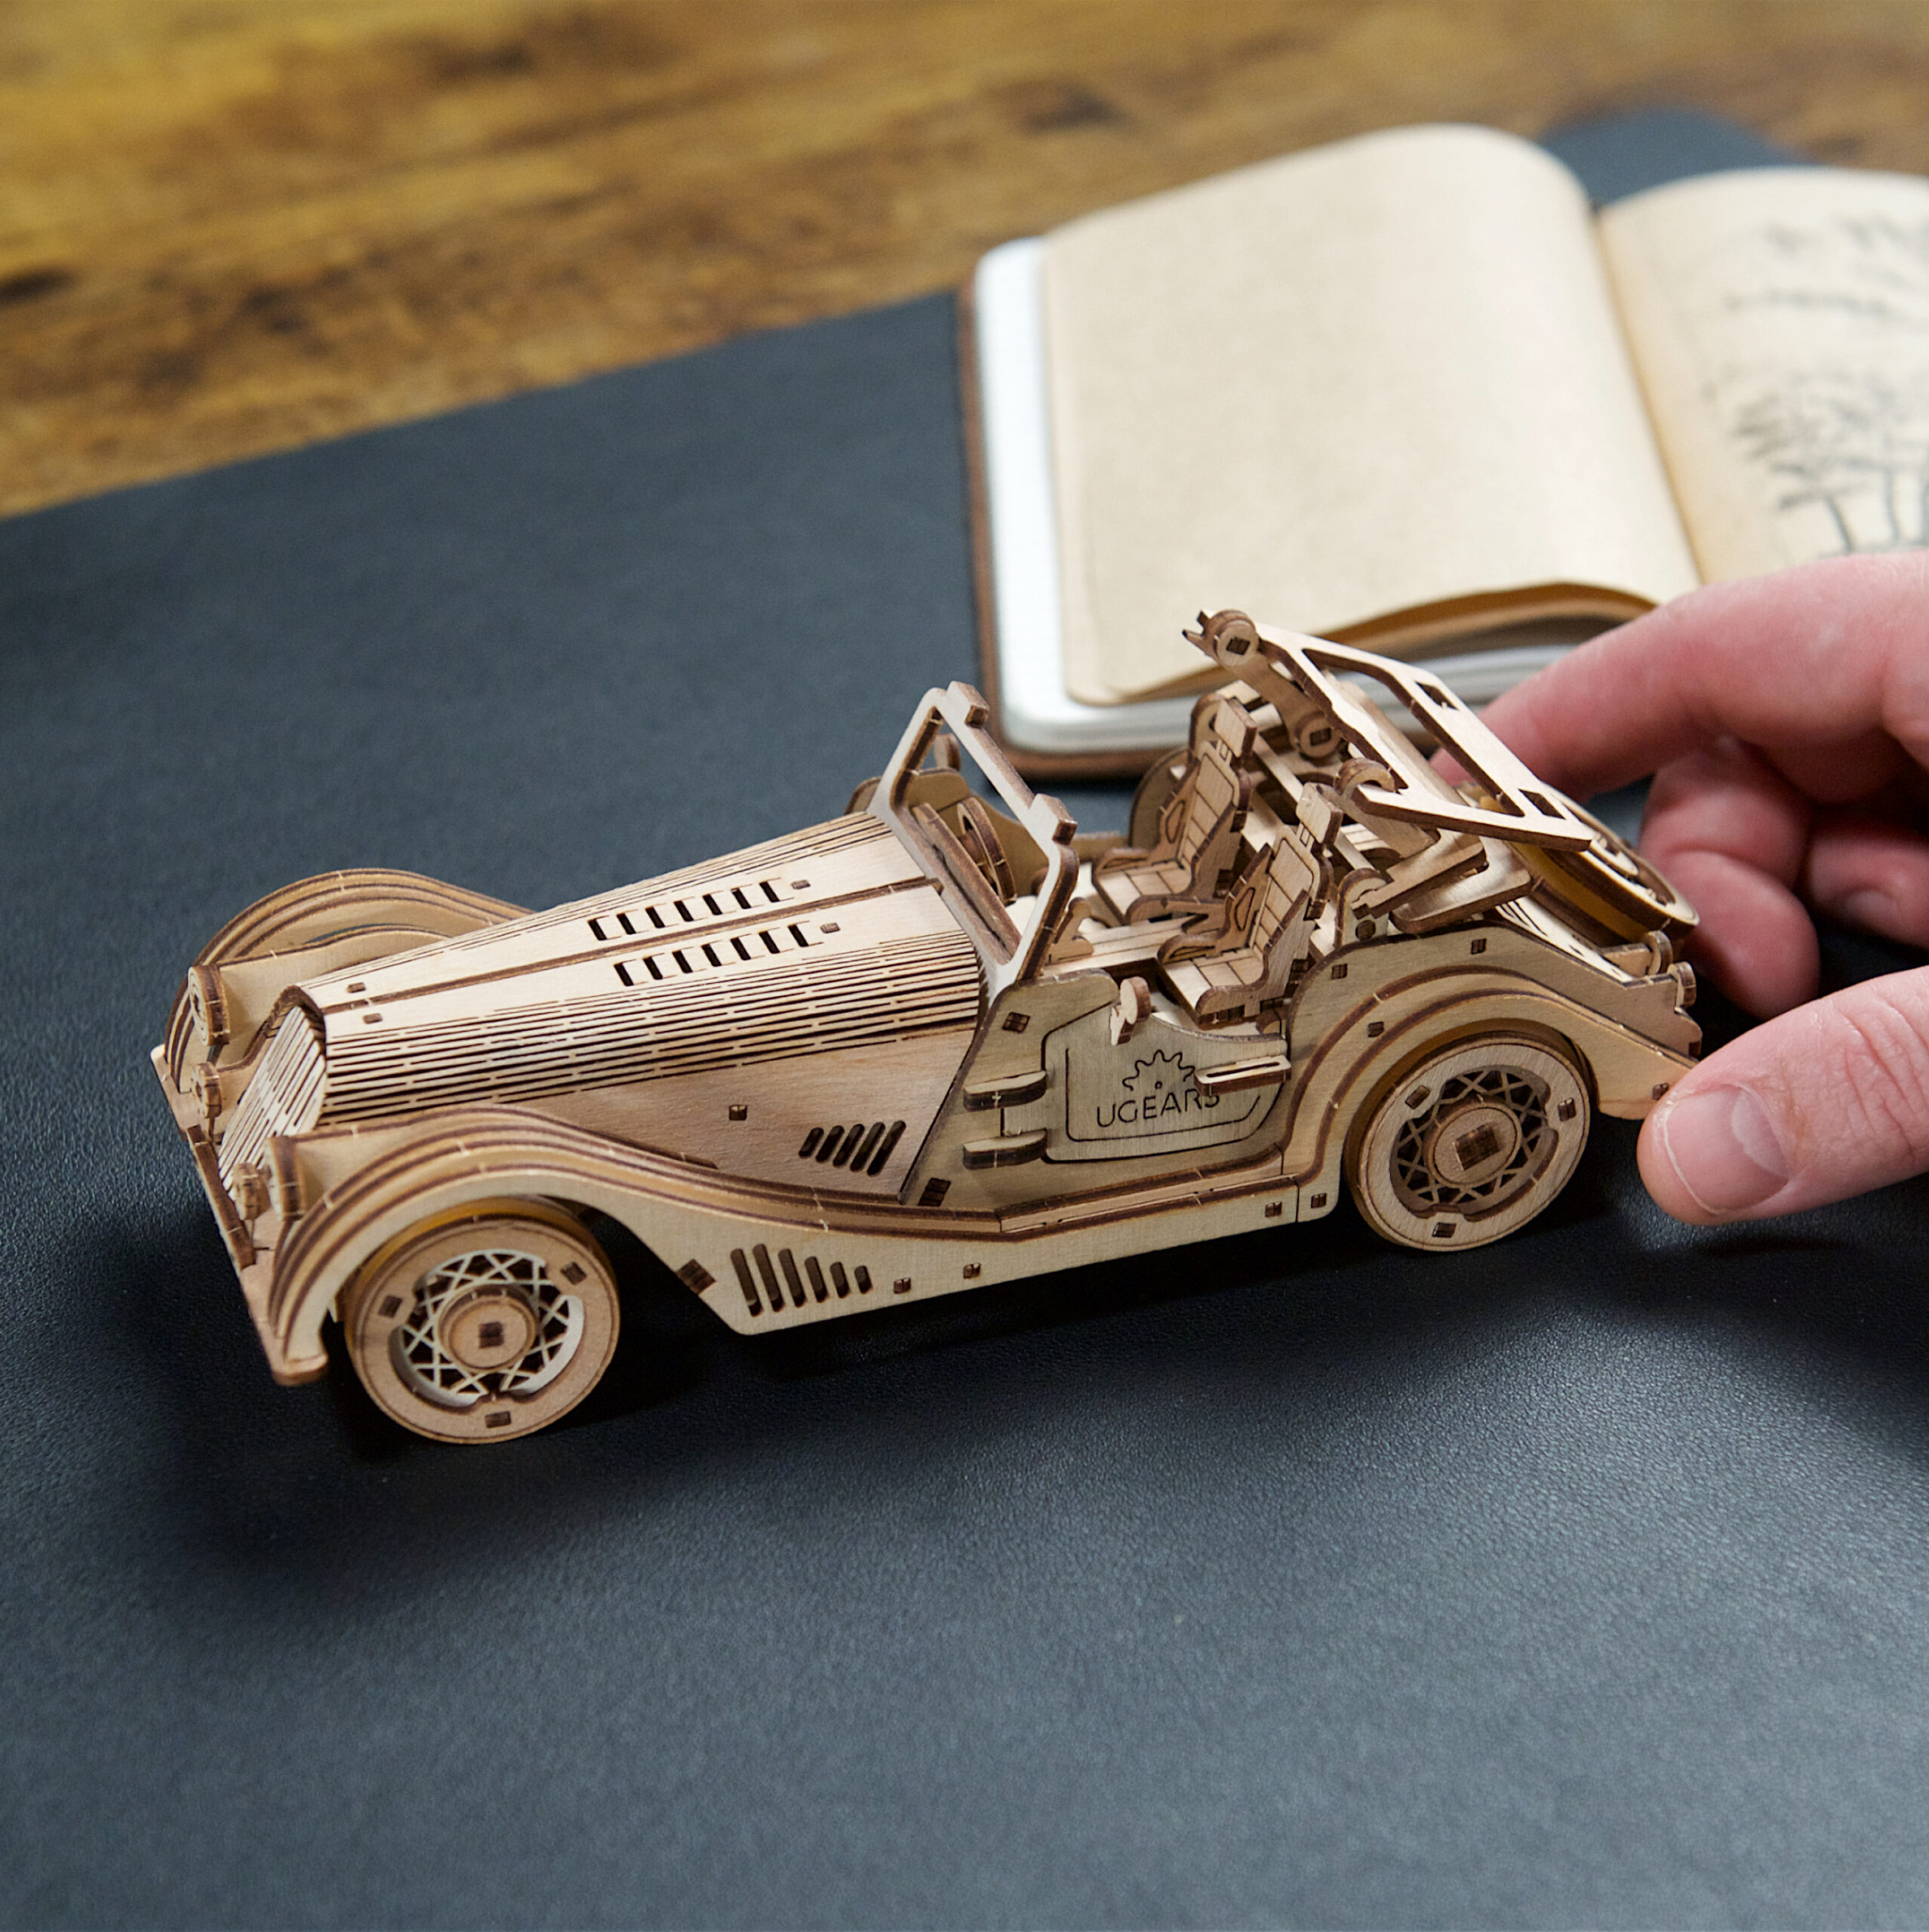 Puzzle 3D publicitaire en bois en forme de véhicules. Achat en gros